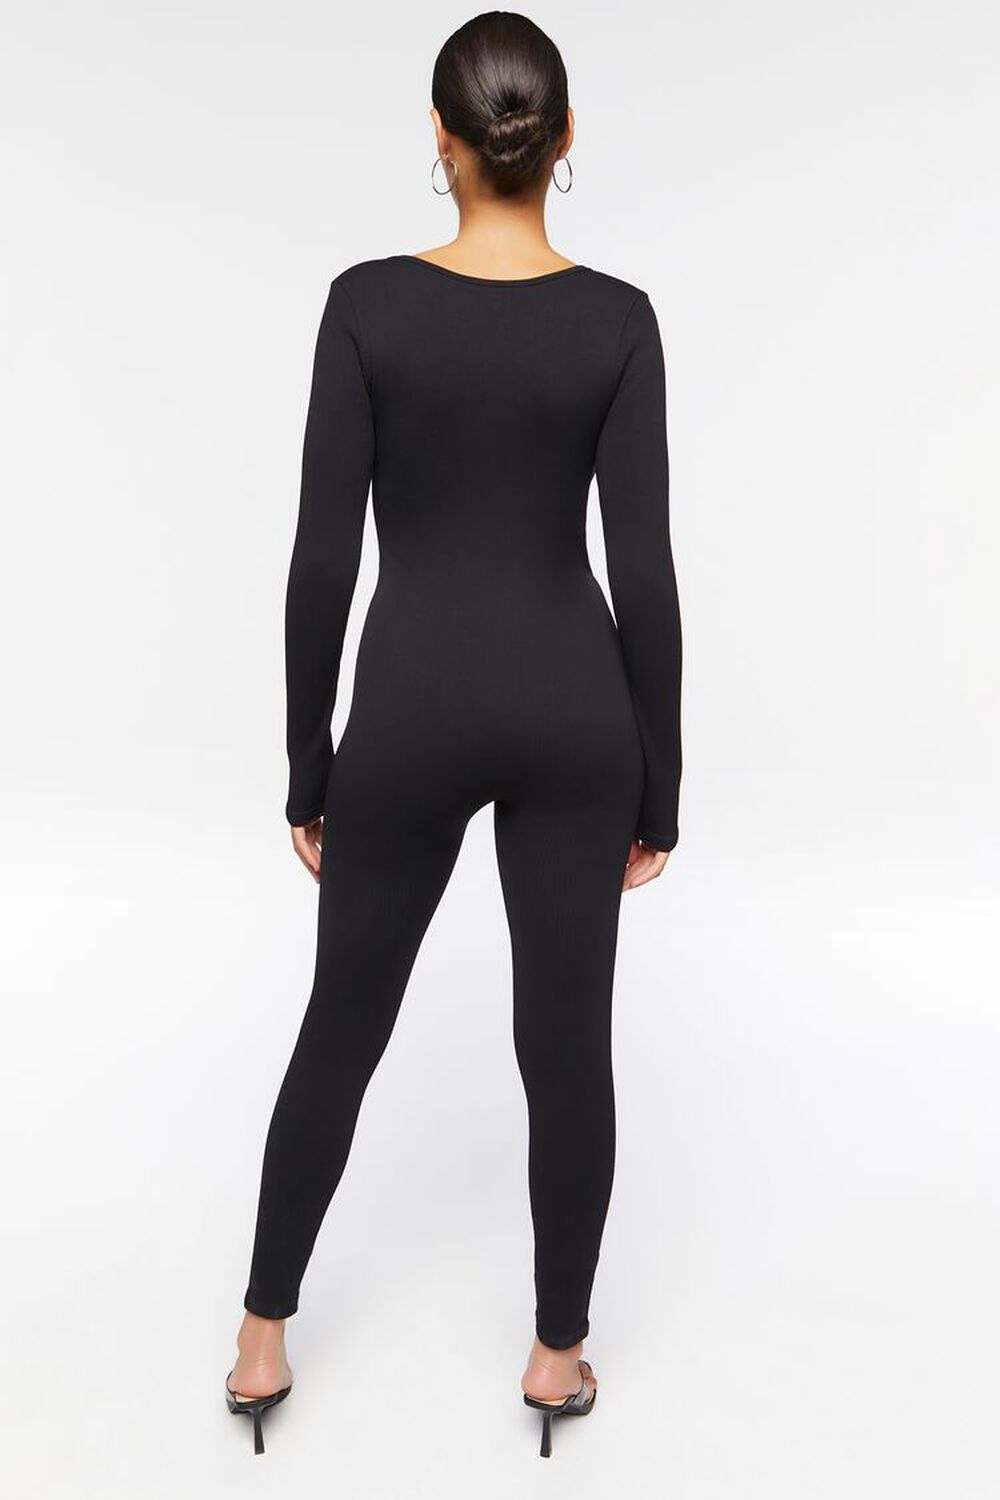 BLACK Seamless Long-Sleeve Jumpsuit, image 3